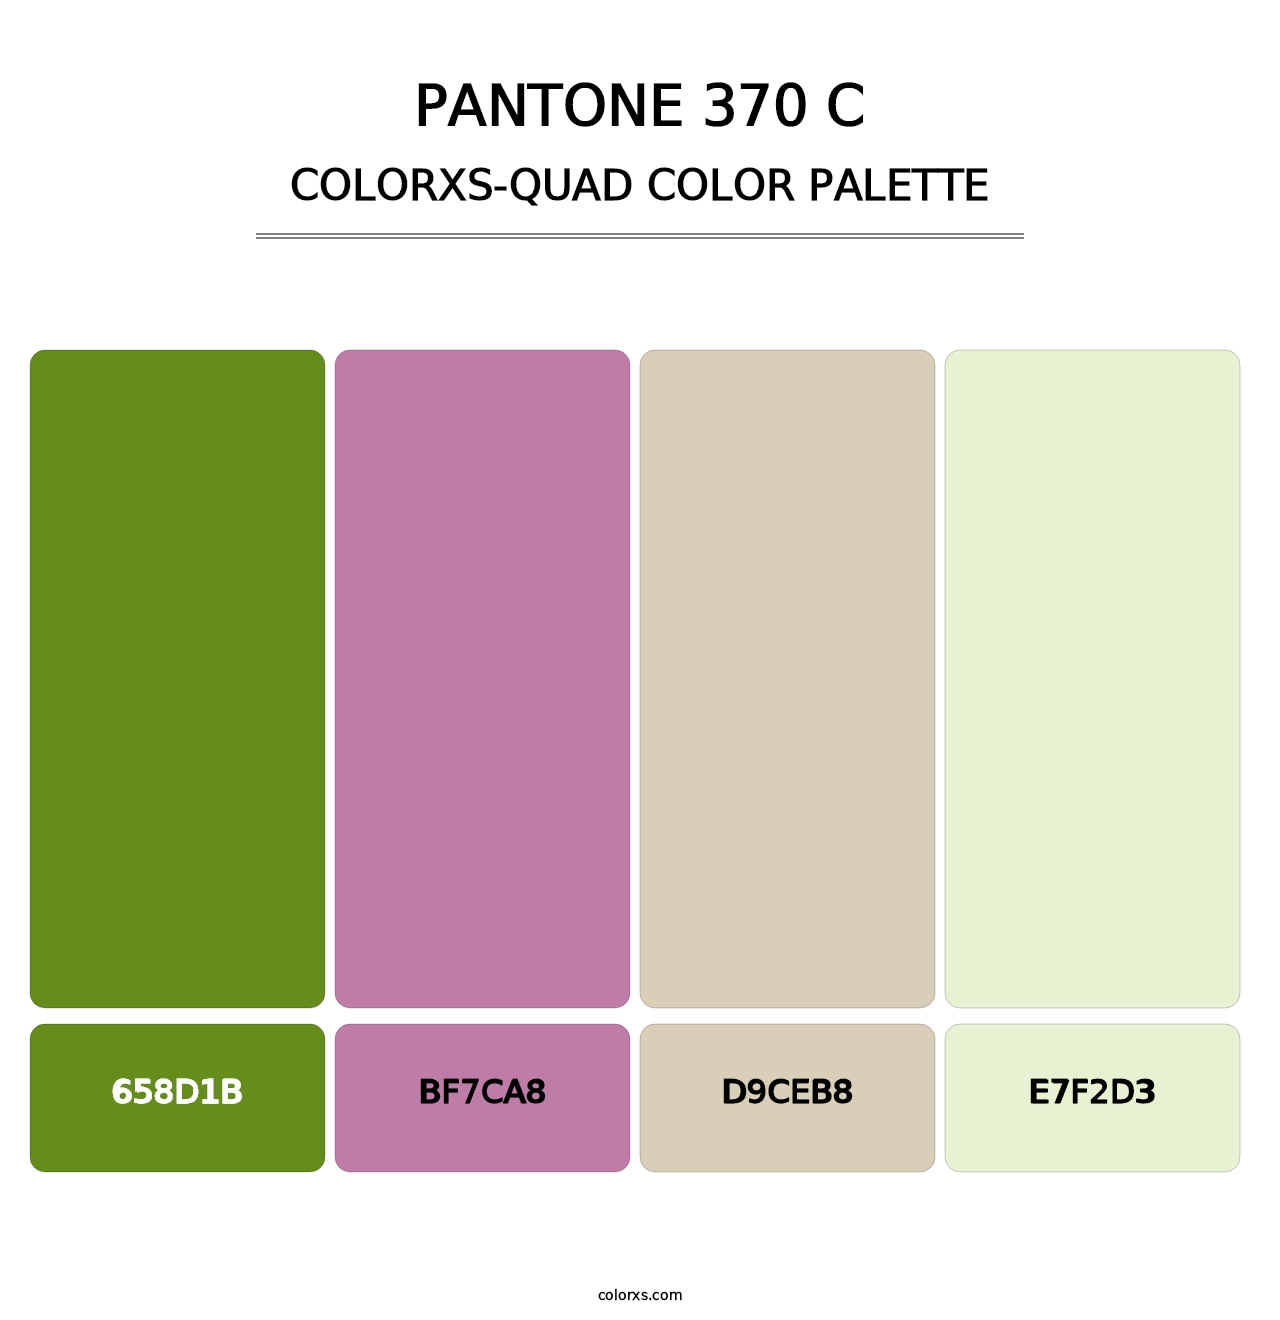 PANTONE 370 C - Colorxs Quad Palette